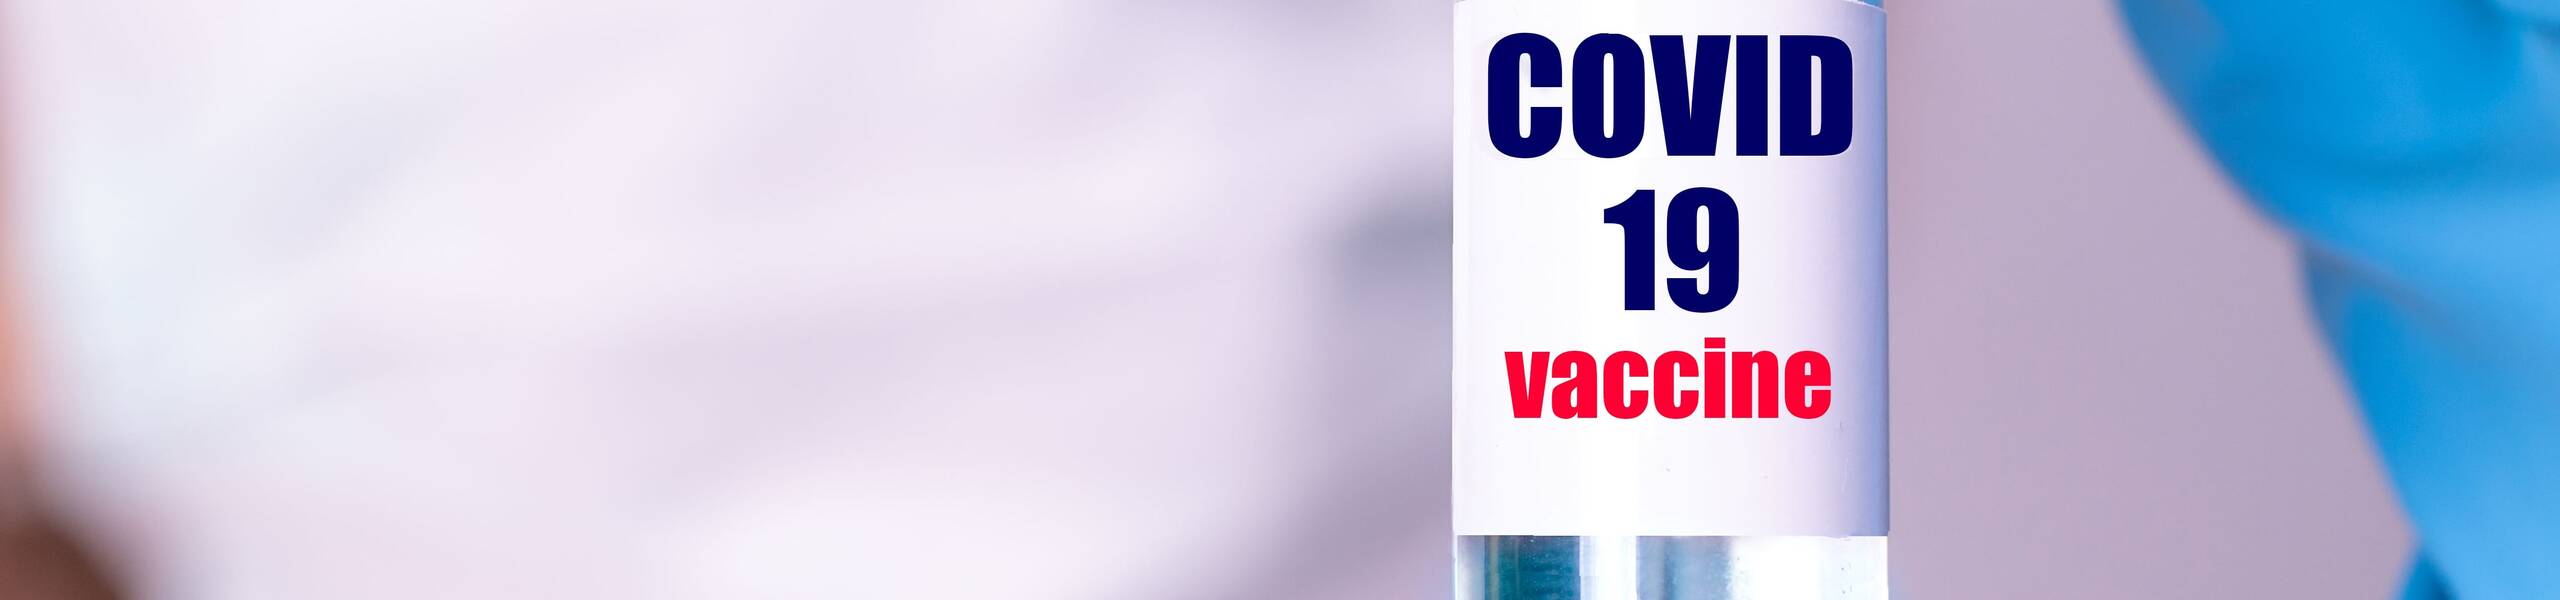 ยา Pfizer COVID ได้รับการอนุมัติขั้นสุดท้ายจากคณะกรรมาธิการยุโรป